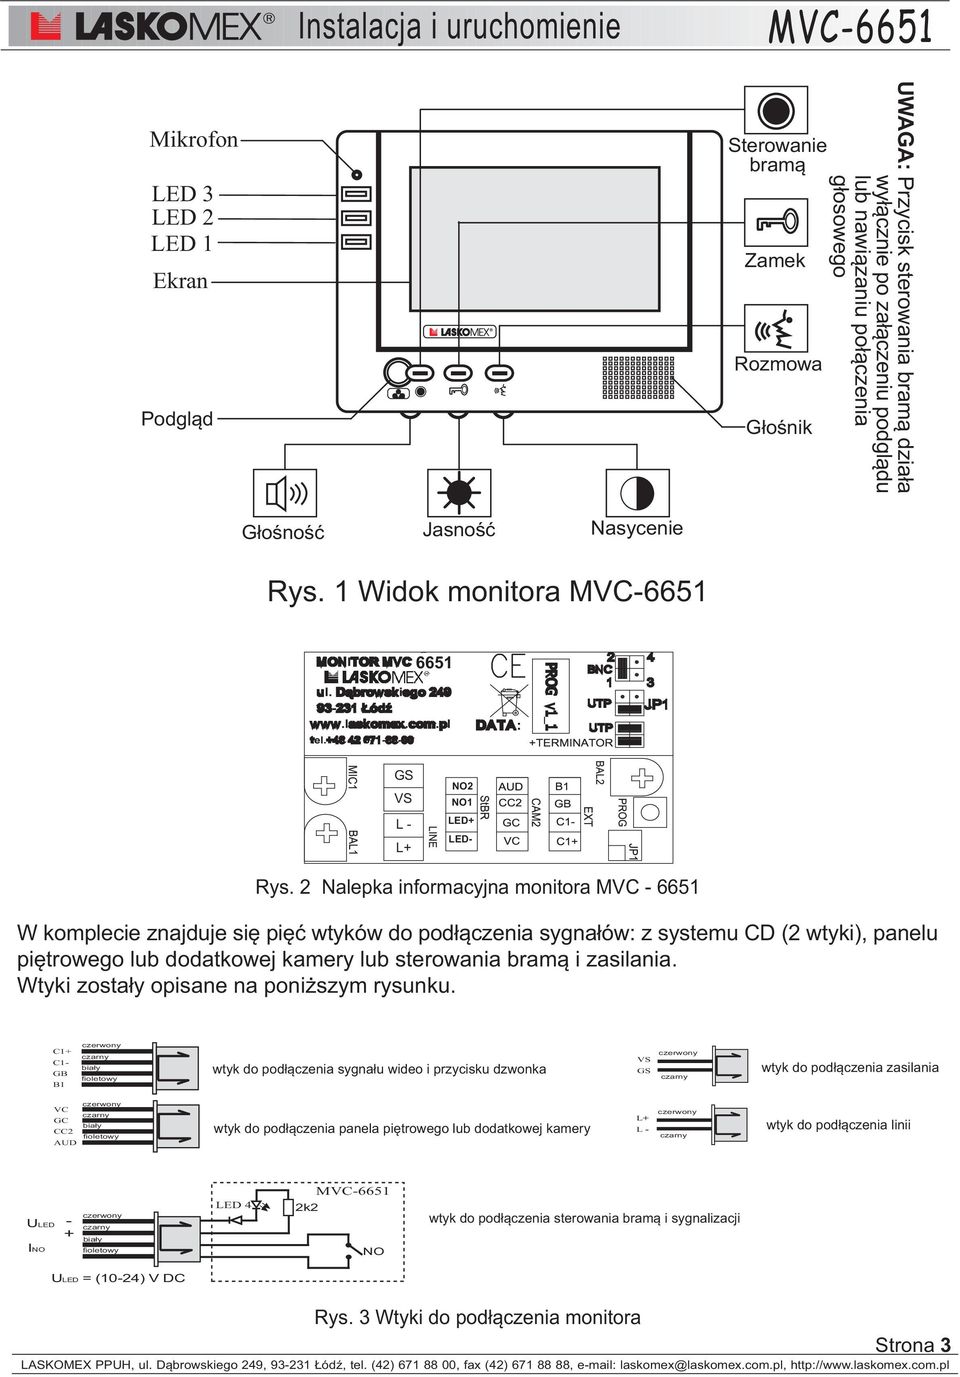 2 Nalepka informacyjna monitora MVC - 6651 W komplecie znajduje siê piêæ wtyków do pod³¹czenia sygna³ów: z systemu CD (2 wtyki), panelu piêtrowego lub dodatkowej kamery lub sterowania bram¹ i